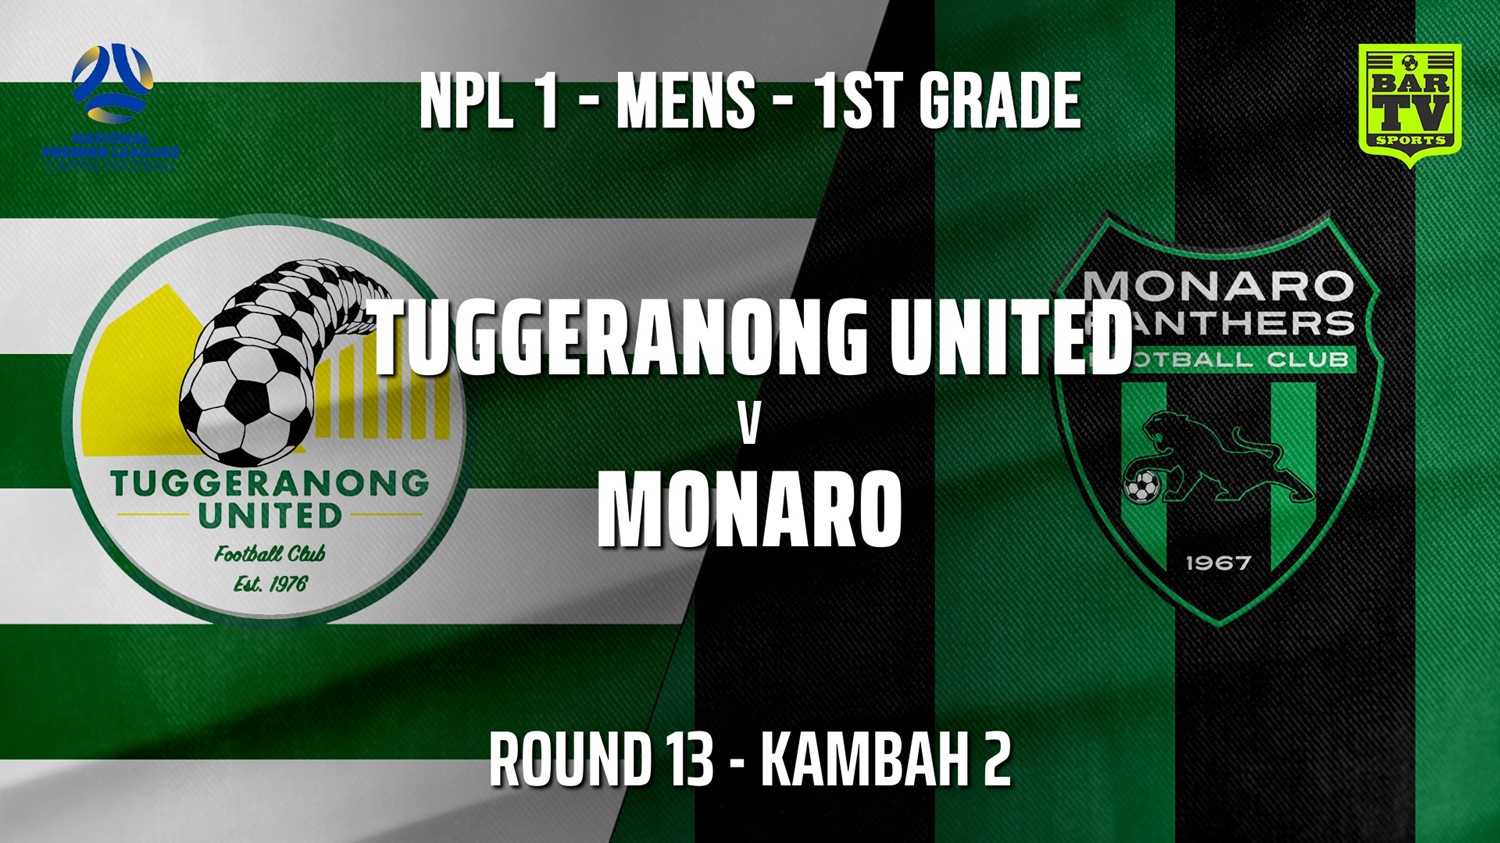 210711-Capital NPL Round 13 - Tuggeranong United FC v Monaro Panthers FC Minigame Slate Image